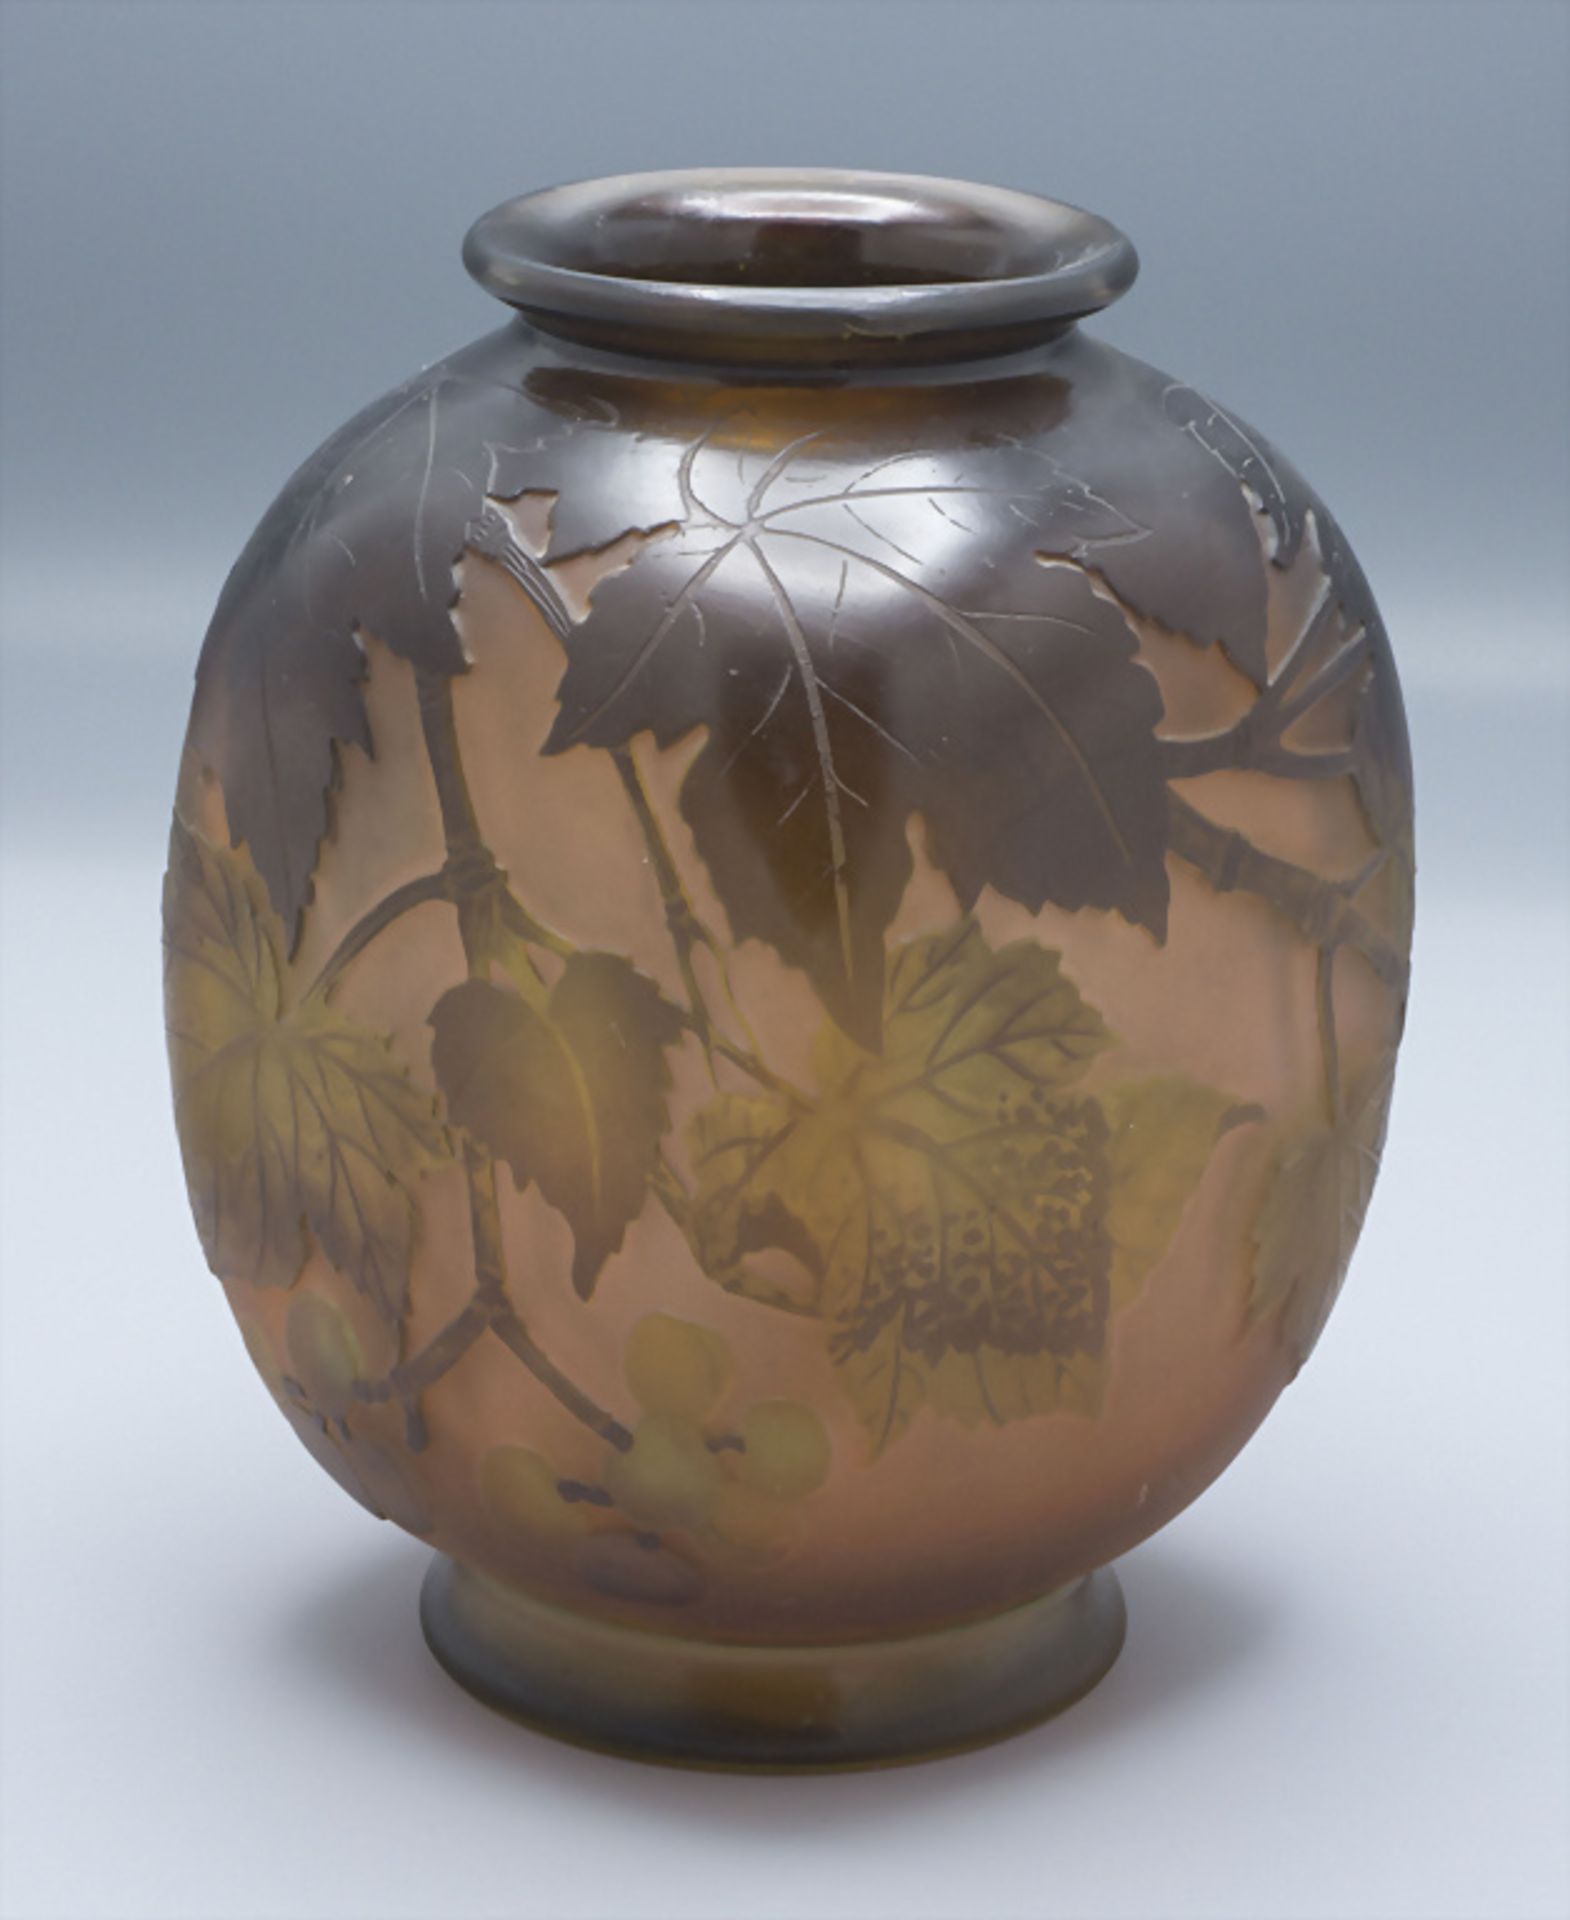 Jugendstil Vierkantvase mit Weinranken / An Art Nouveau square cameo glass vase with vine ... - Bild 2 aus 7